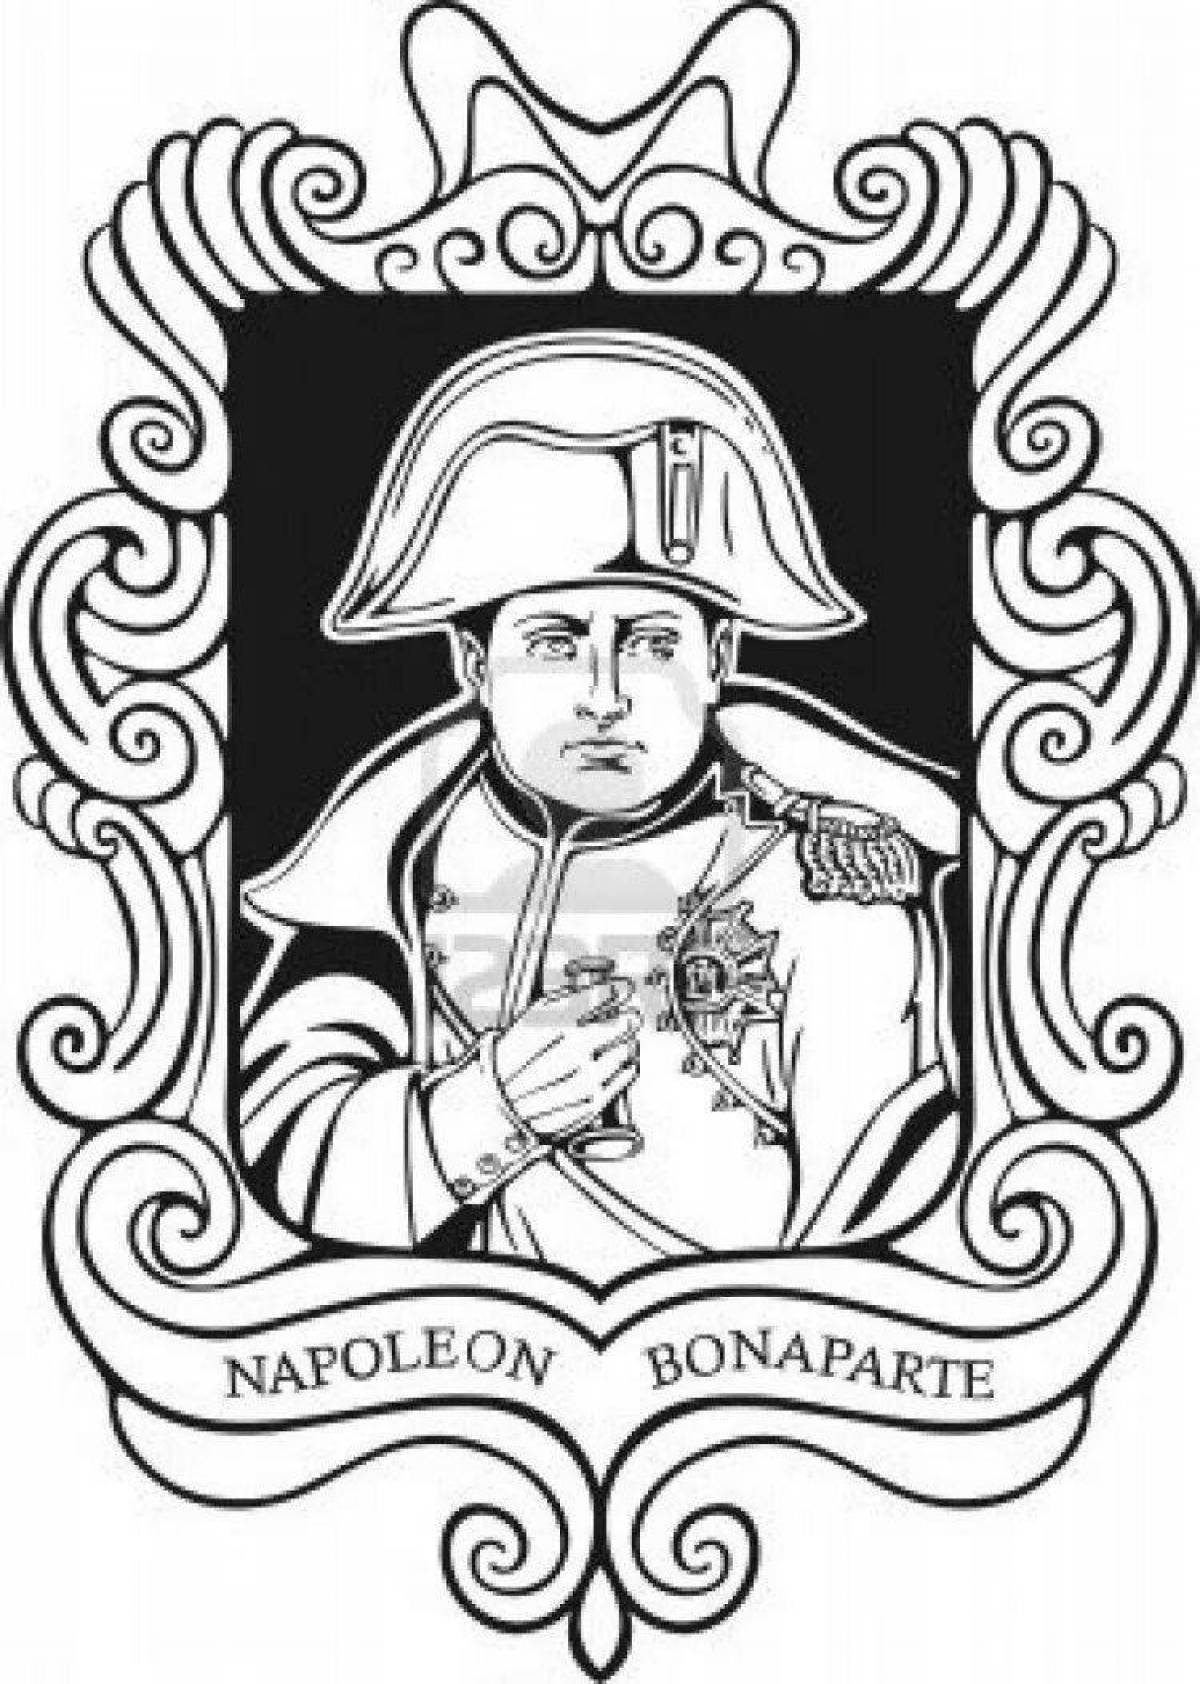 Napoleon's bold coloring